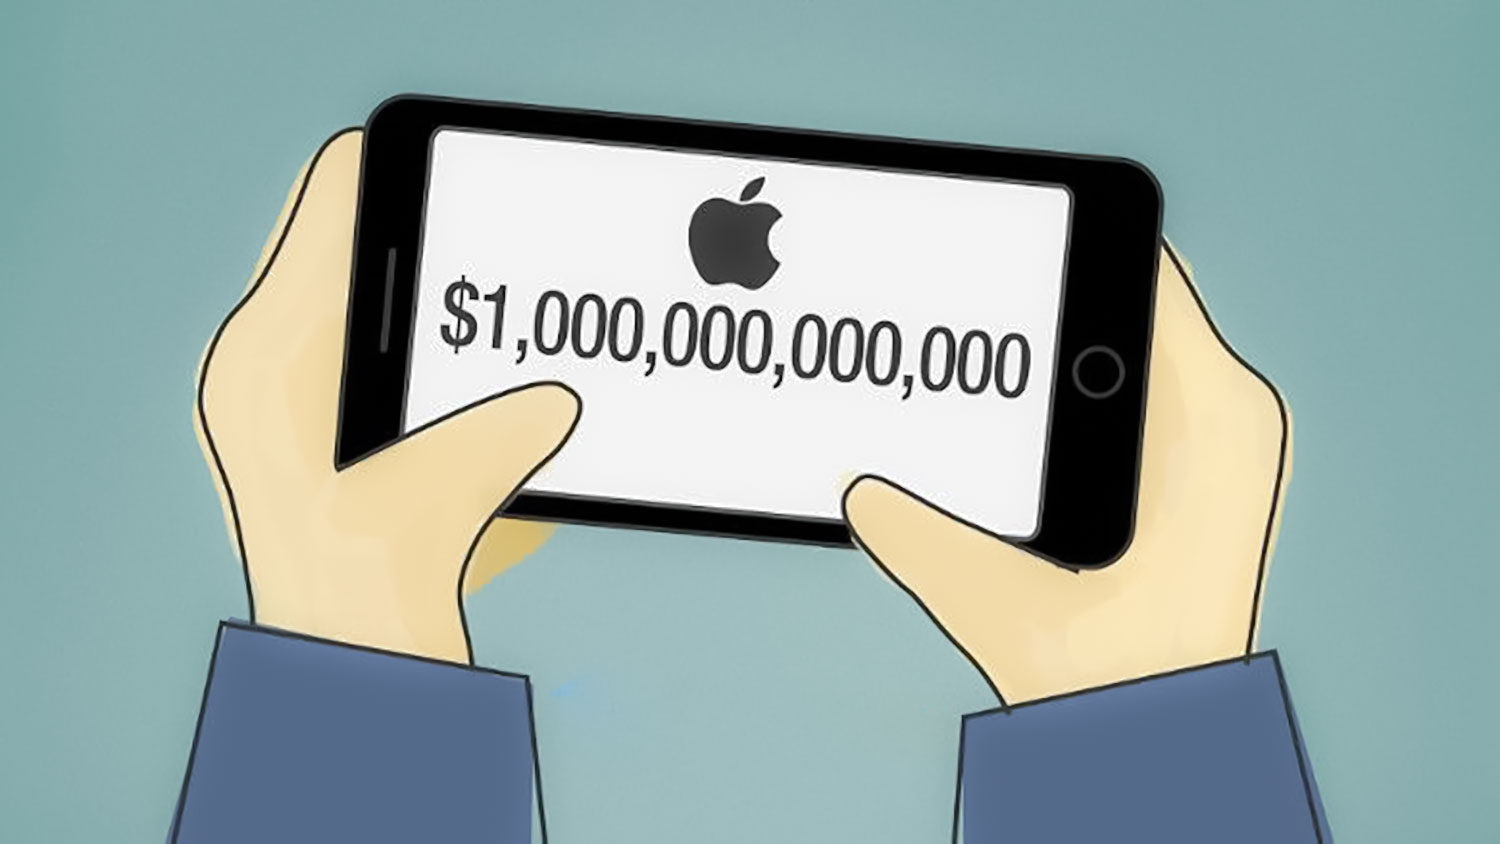 پس از معرفی آیفون ۱۱ اپل دوباره تریلیون دلاری شد